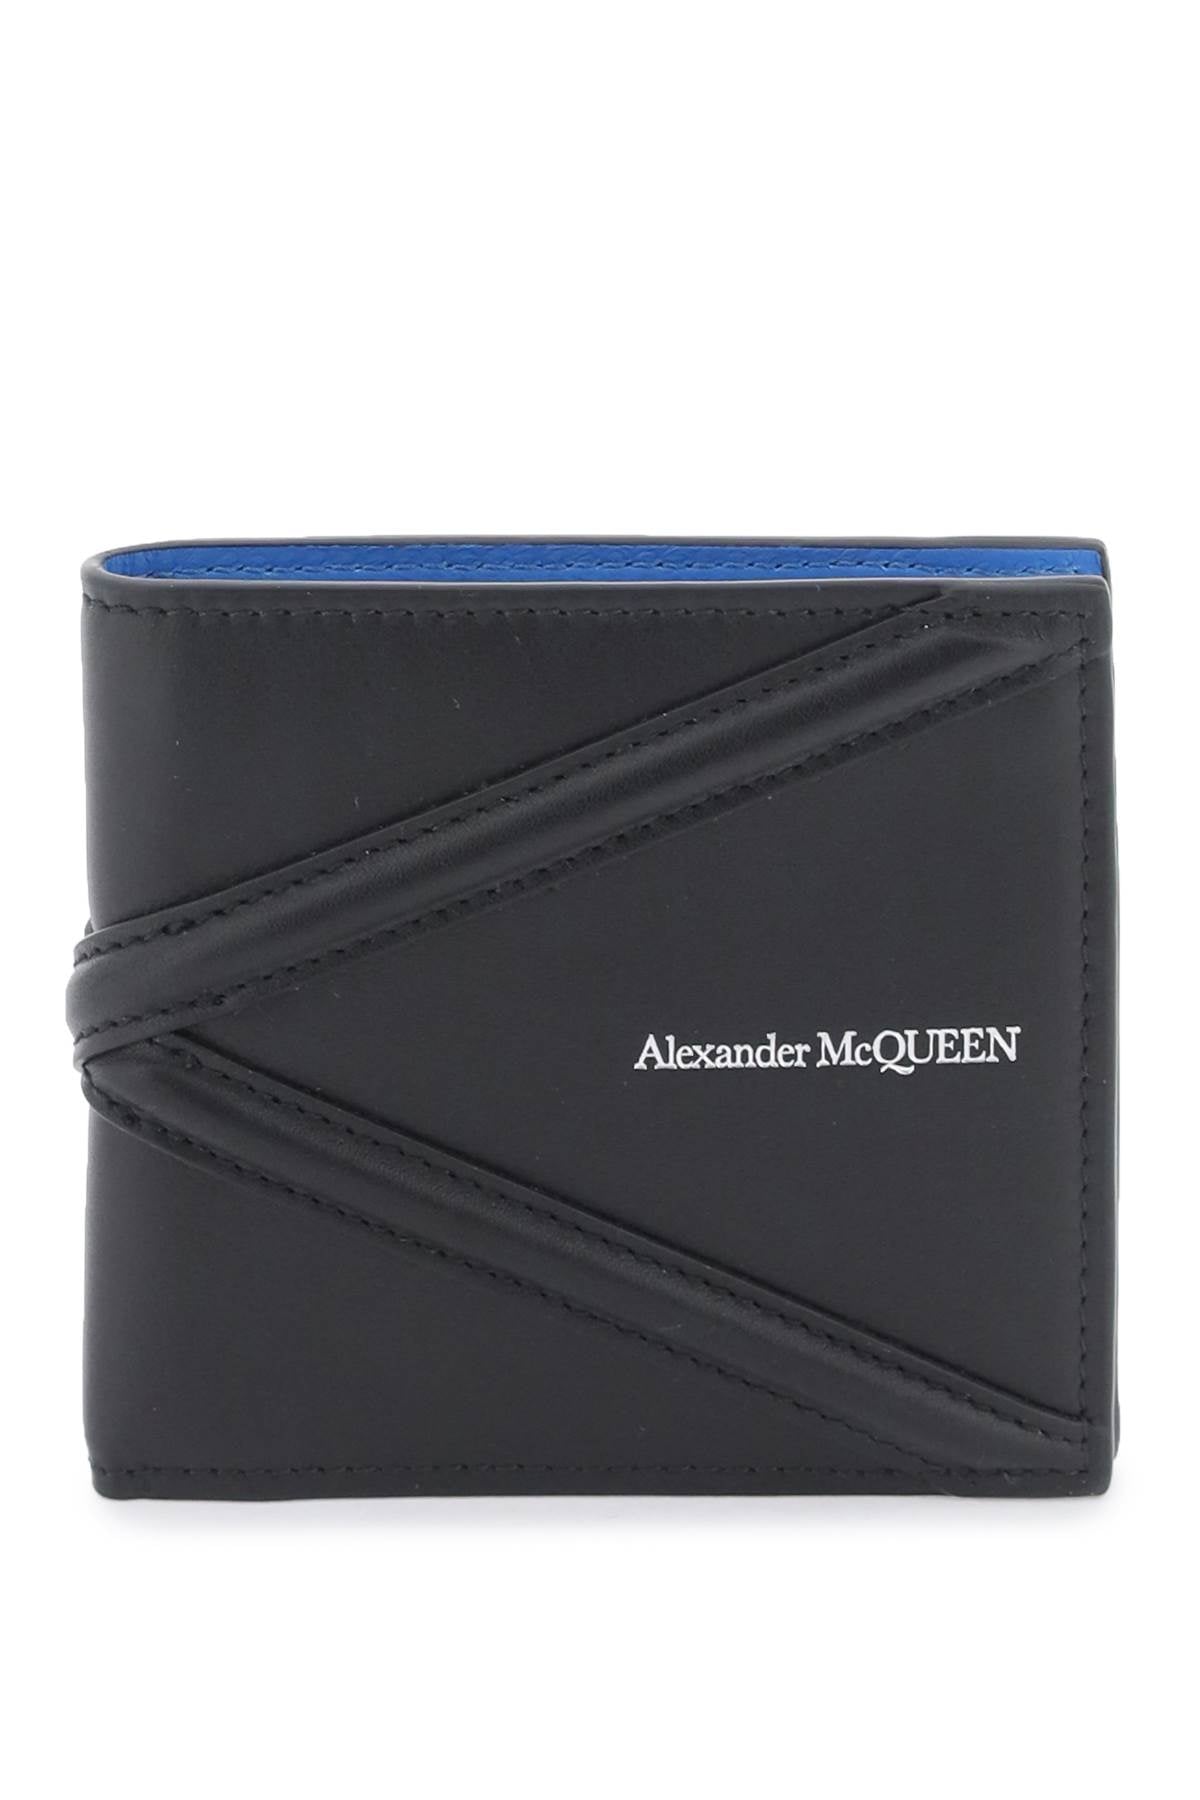 Alexander mcqueen harness bifold wallet-0